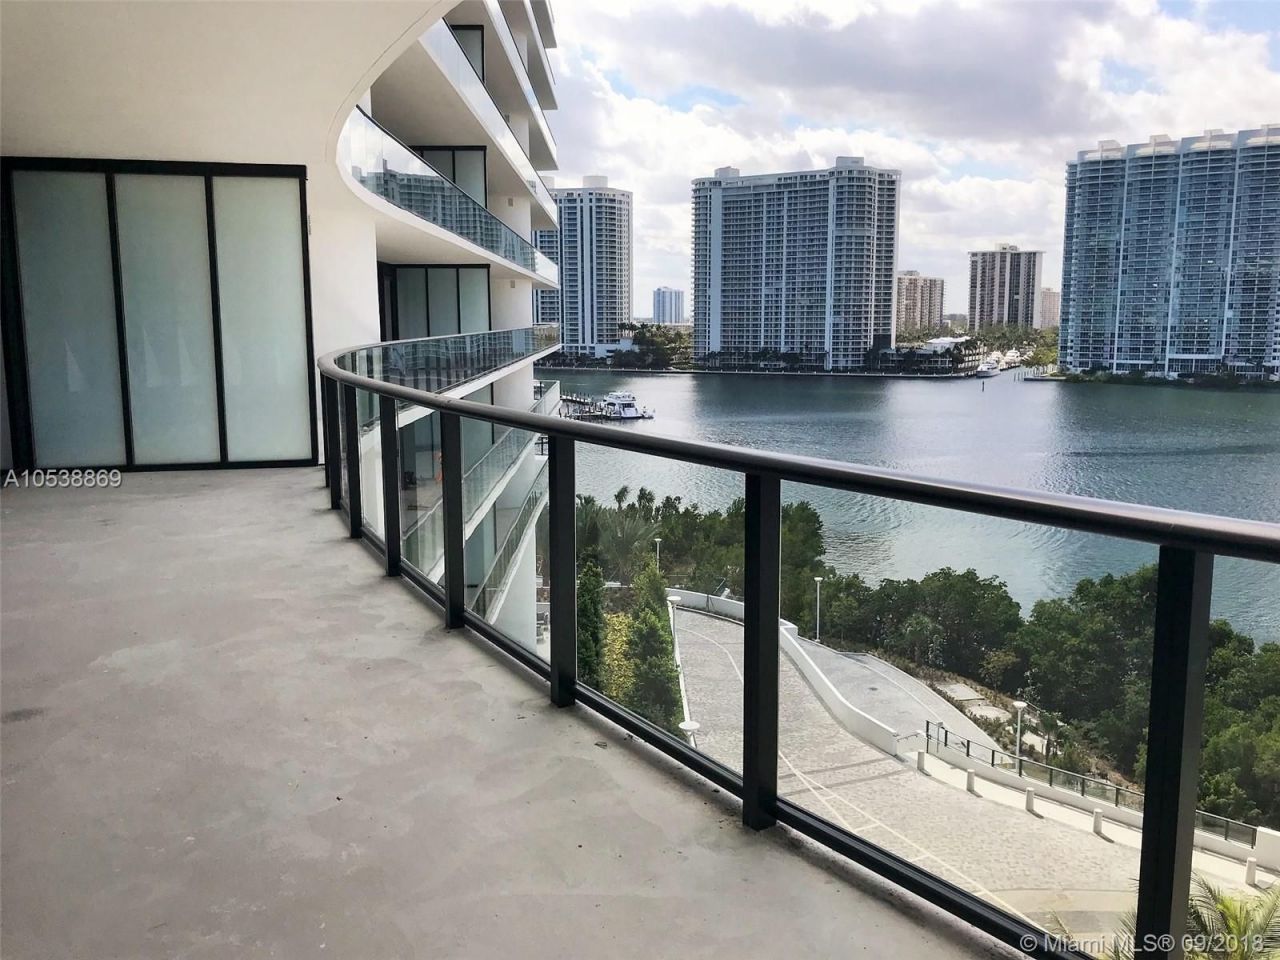 Апартаменты в Майами, США, 450 м2 фото 4